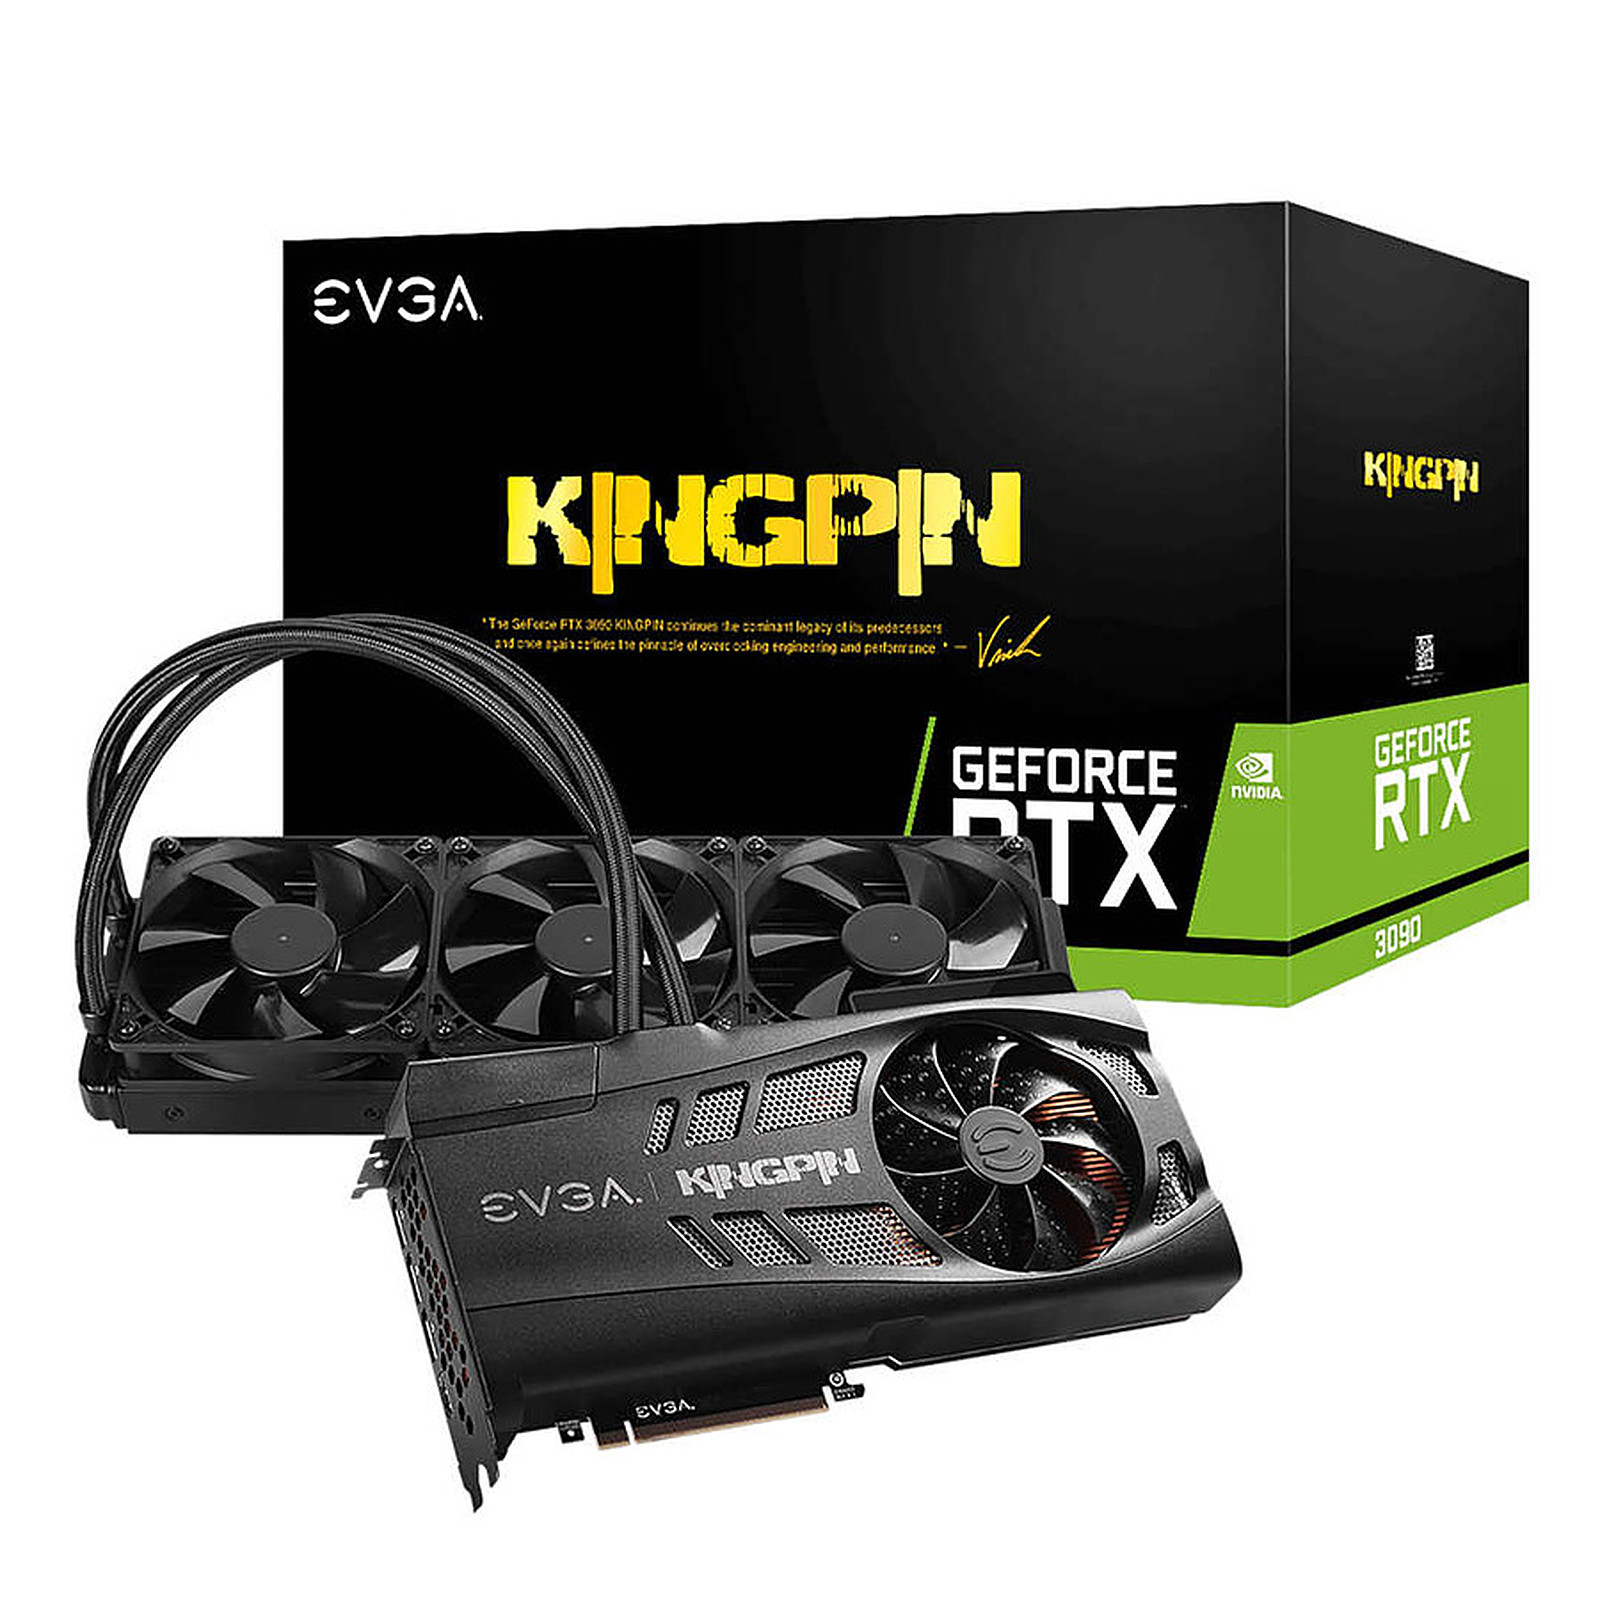 EVGA GeForce RTX 3090 K|NGP|N HYBRID GAMING (LHR) - Carte graphique EVGA